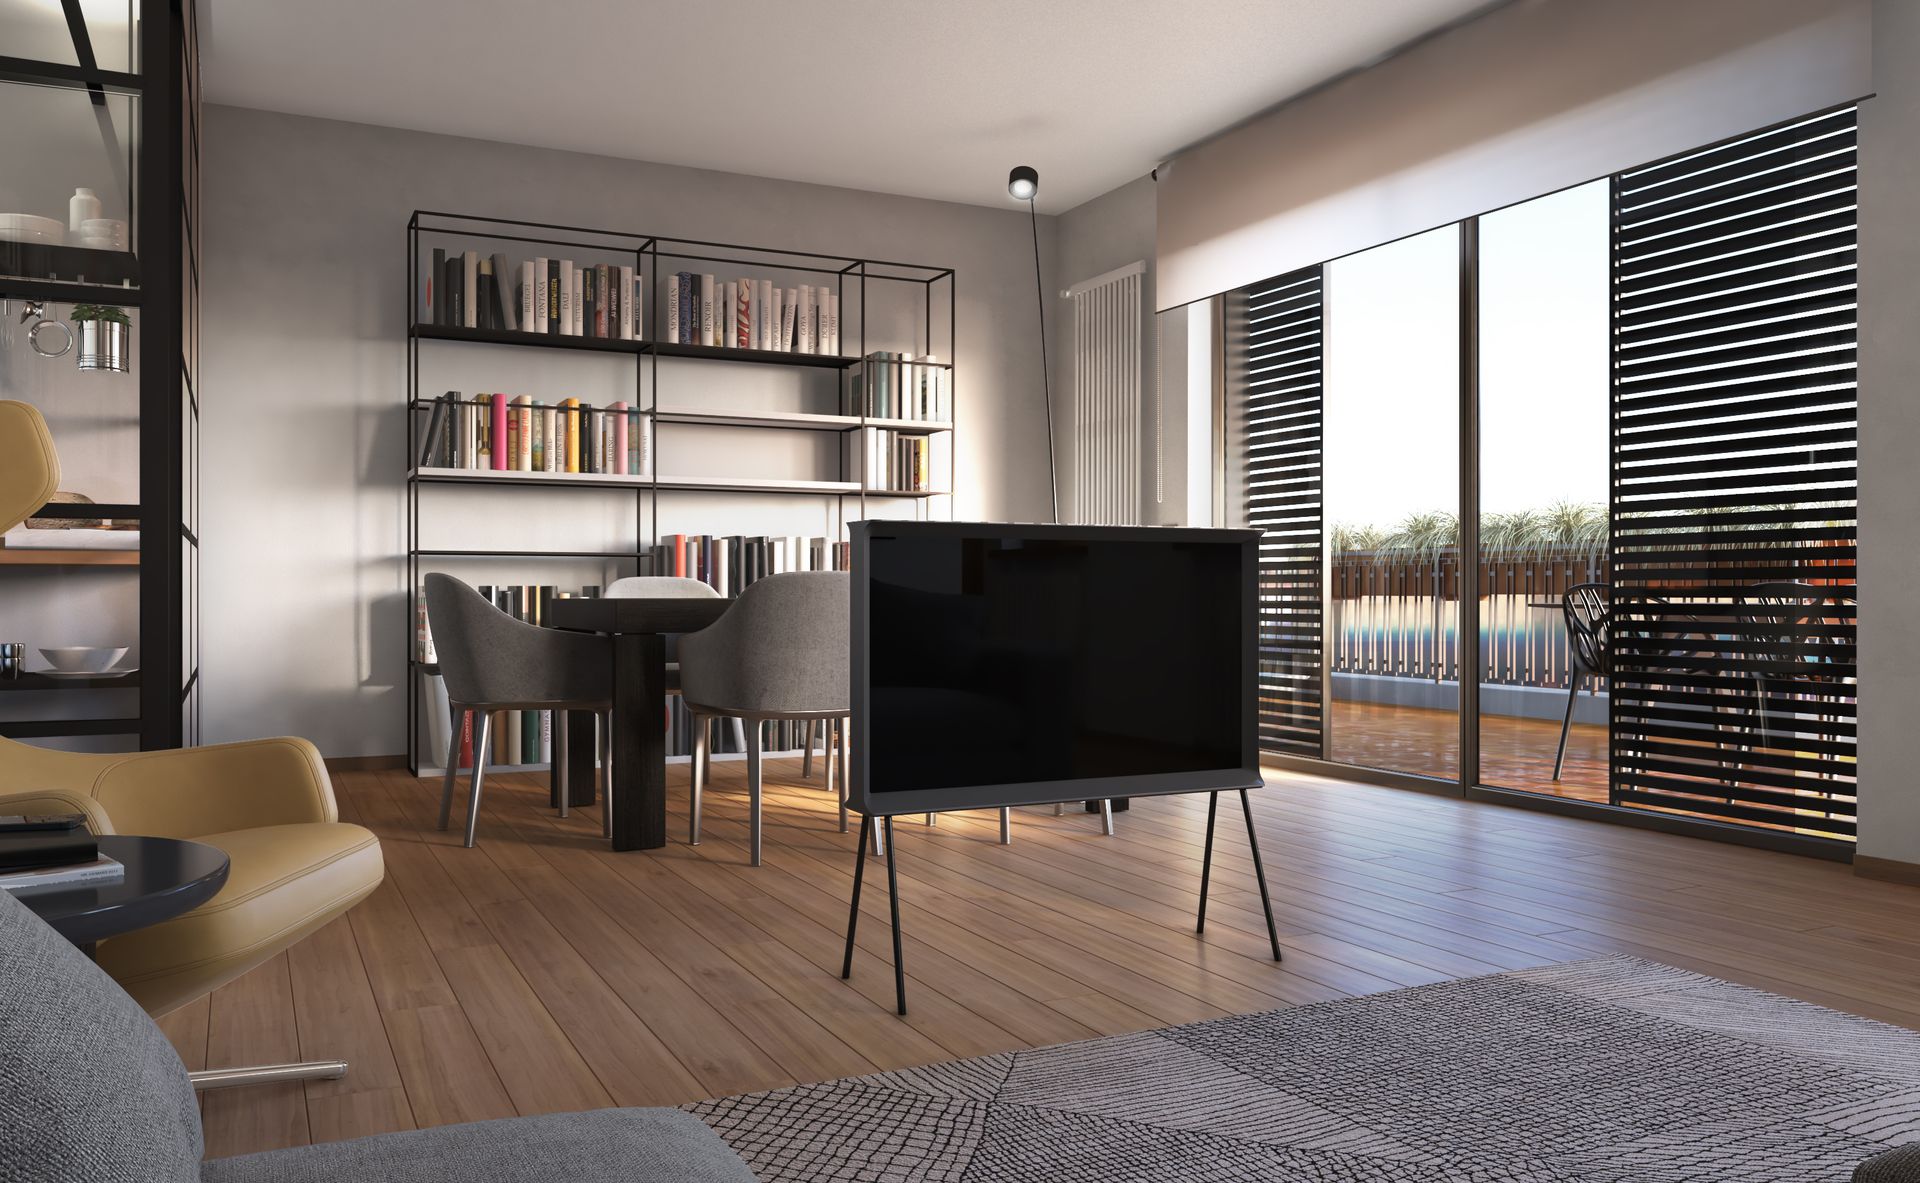 Progetto interior design, ristrutturazione appartamento, ottimizzazione spazio cucina, schermature solari. Officina Magisafi architettura design - render living room